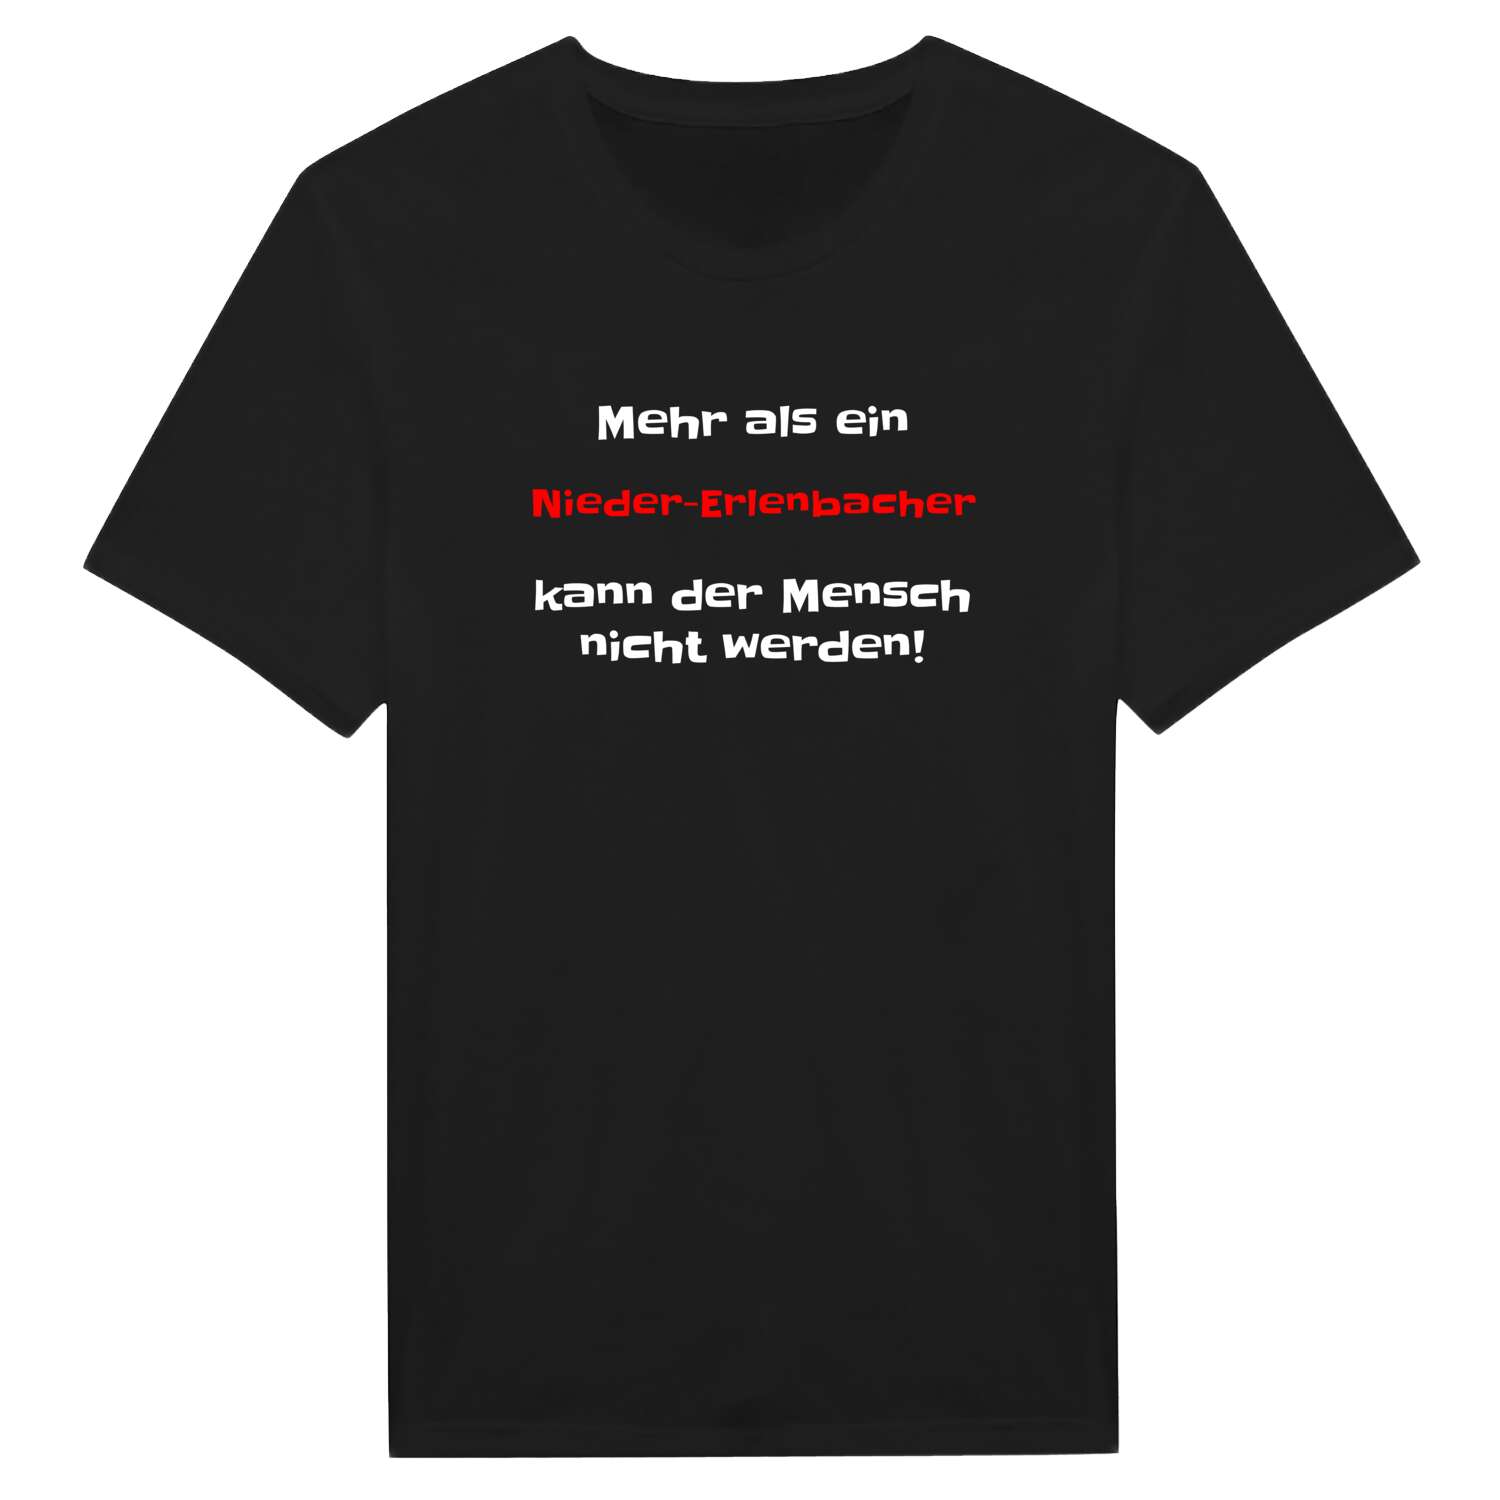 Nieder-Erlenbach T-Shirt »Mehr als ein«